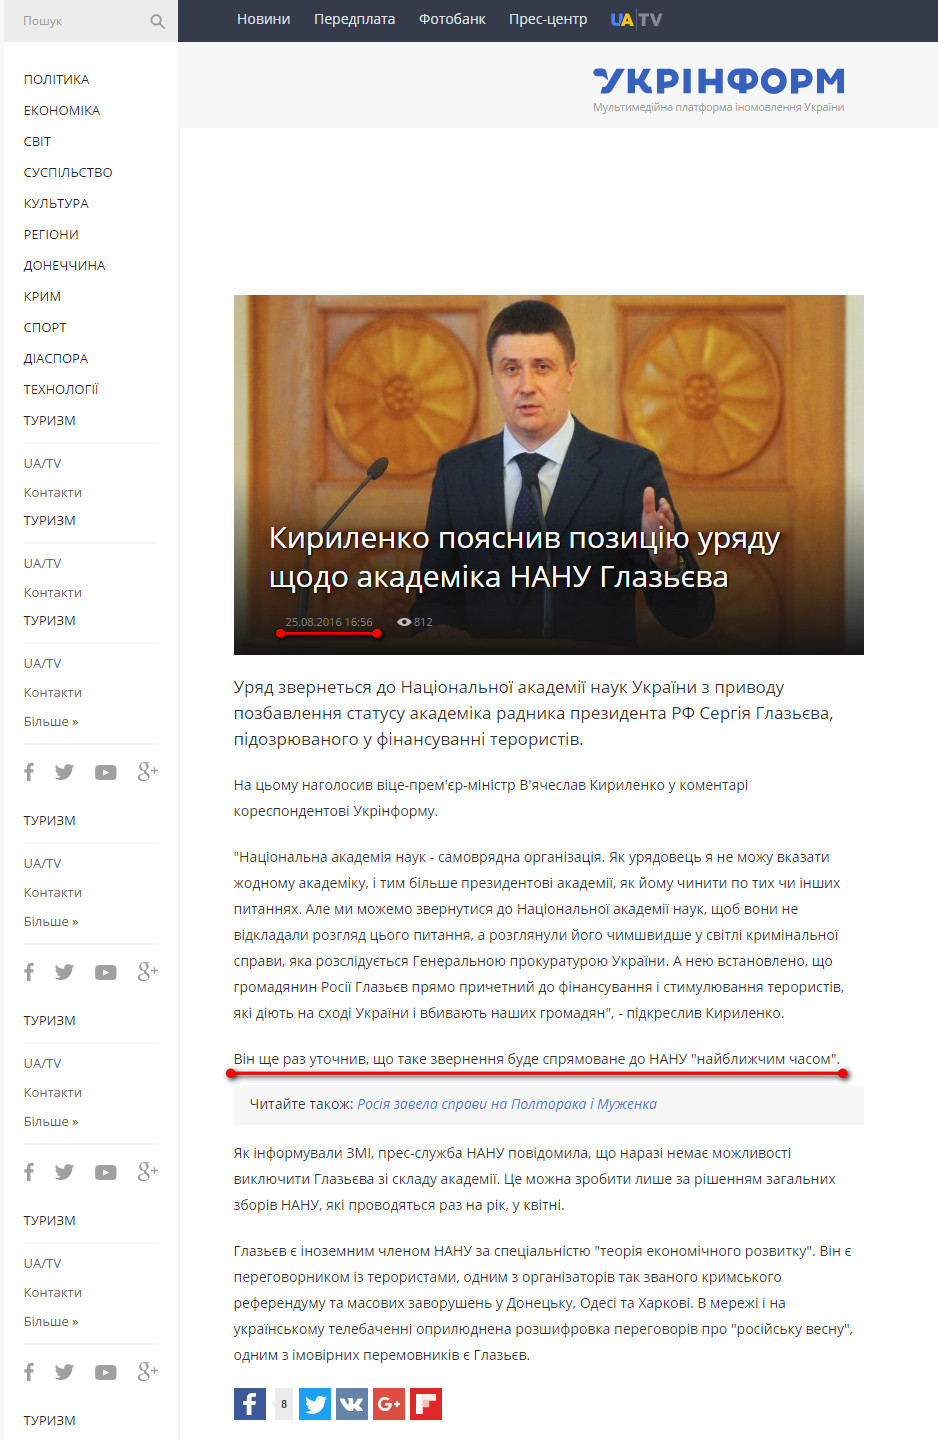 http://www.ukrinform.ua/rubric-society/2072342-kirilenko-poasniv-poziciu-uradu-sodo-akademika-nanu-glazeva.html